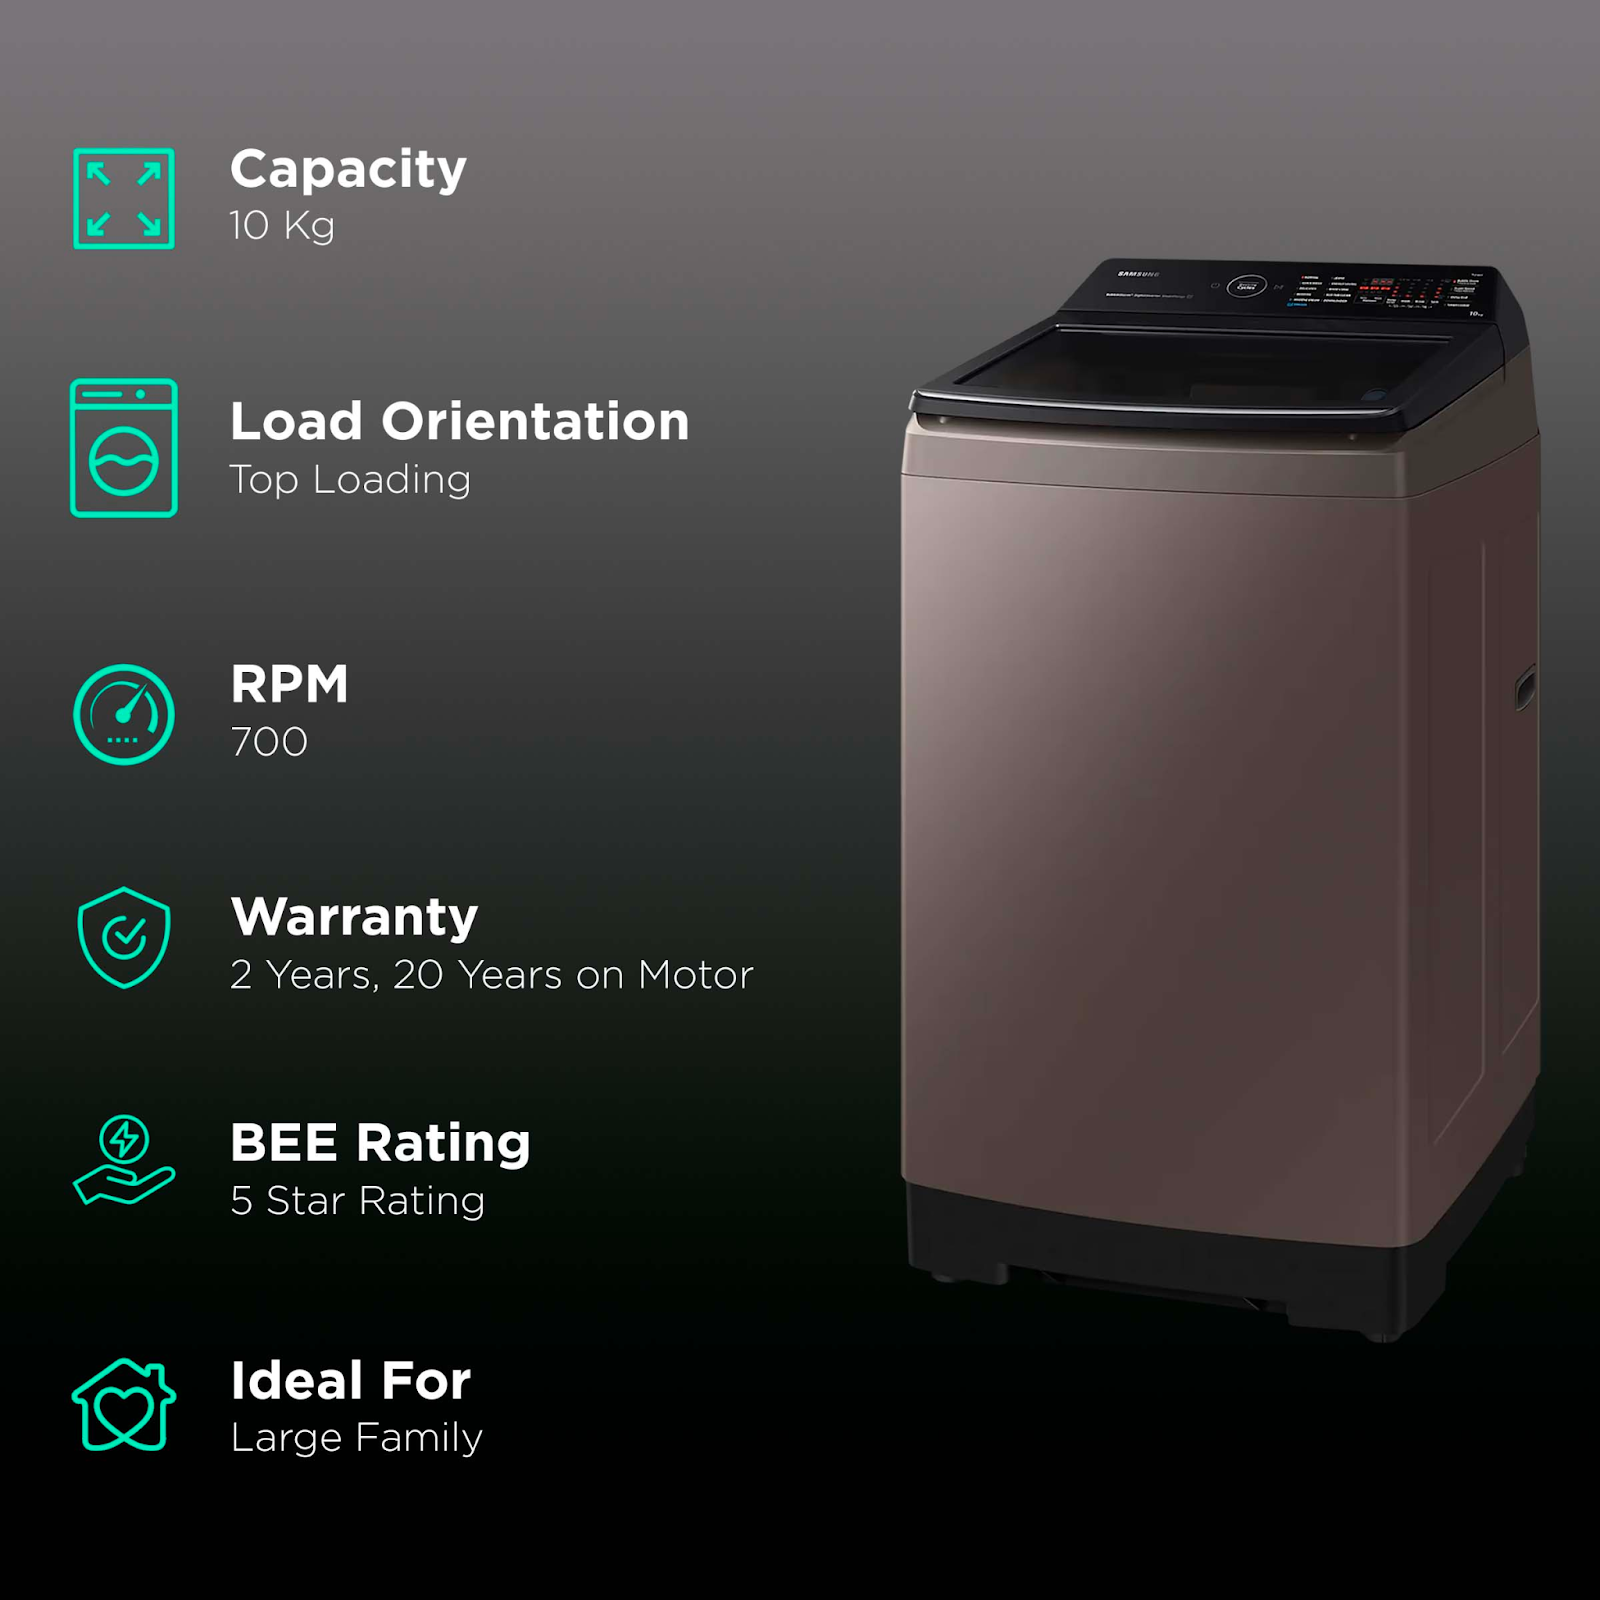 Máy giặt Samsung sở hữu nhiều công nghệ hiện đại và tính năng vượt trội